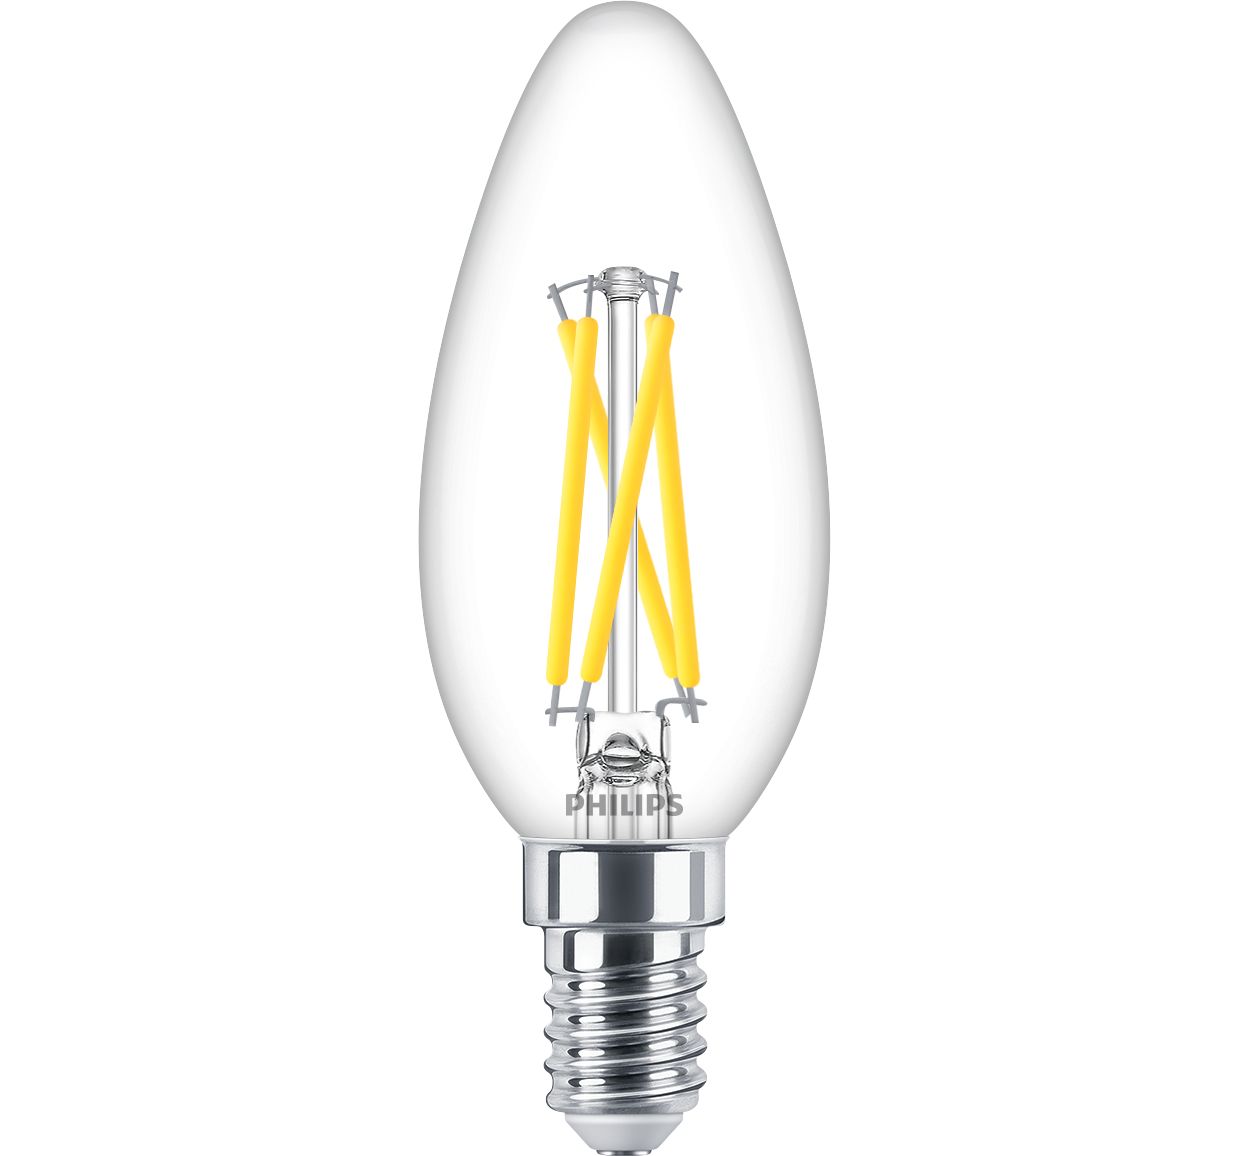 Meetbaar bonen onstabiel LED Lampen in Kerzen- und Tropfenform (dimmbar) 8719514324152 | Philips